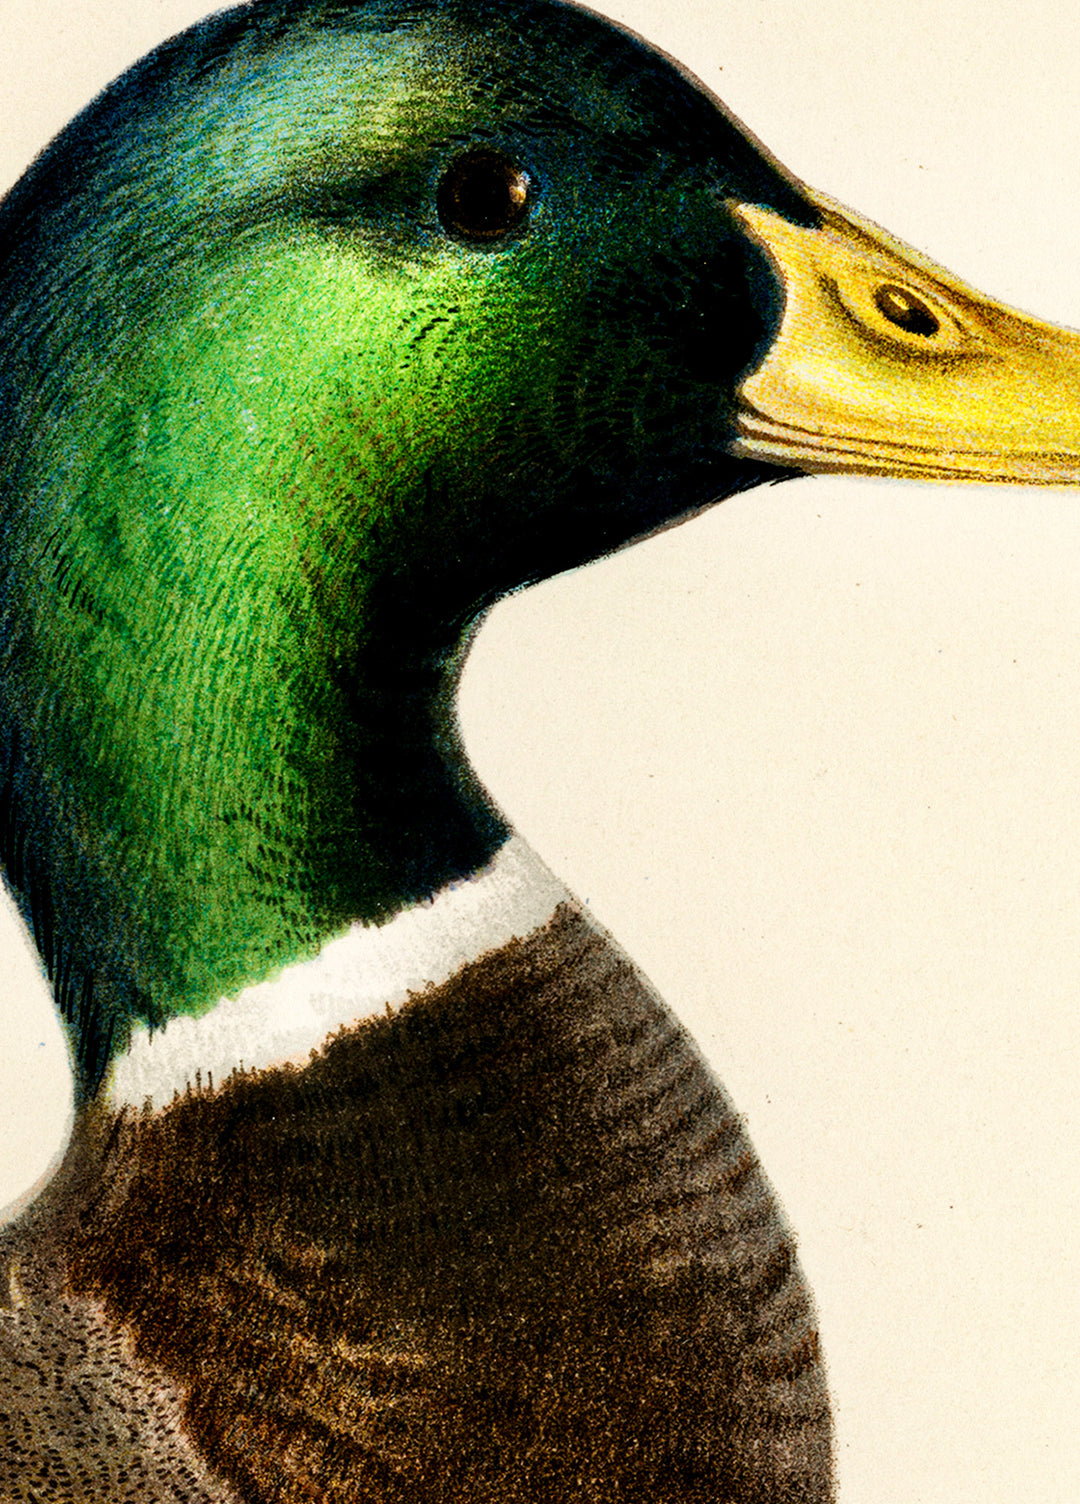 Fågeln Gräsand på klassisk vintage poster/affisch